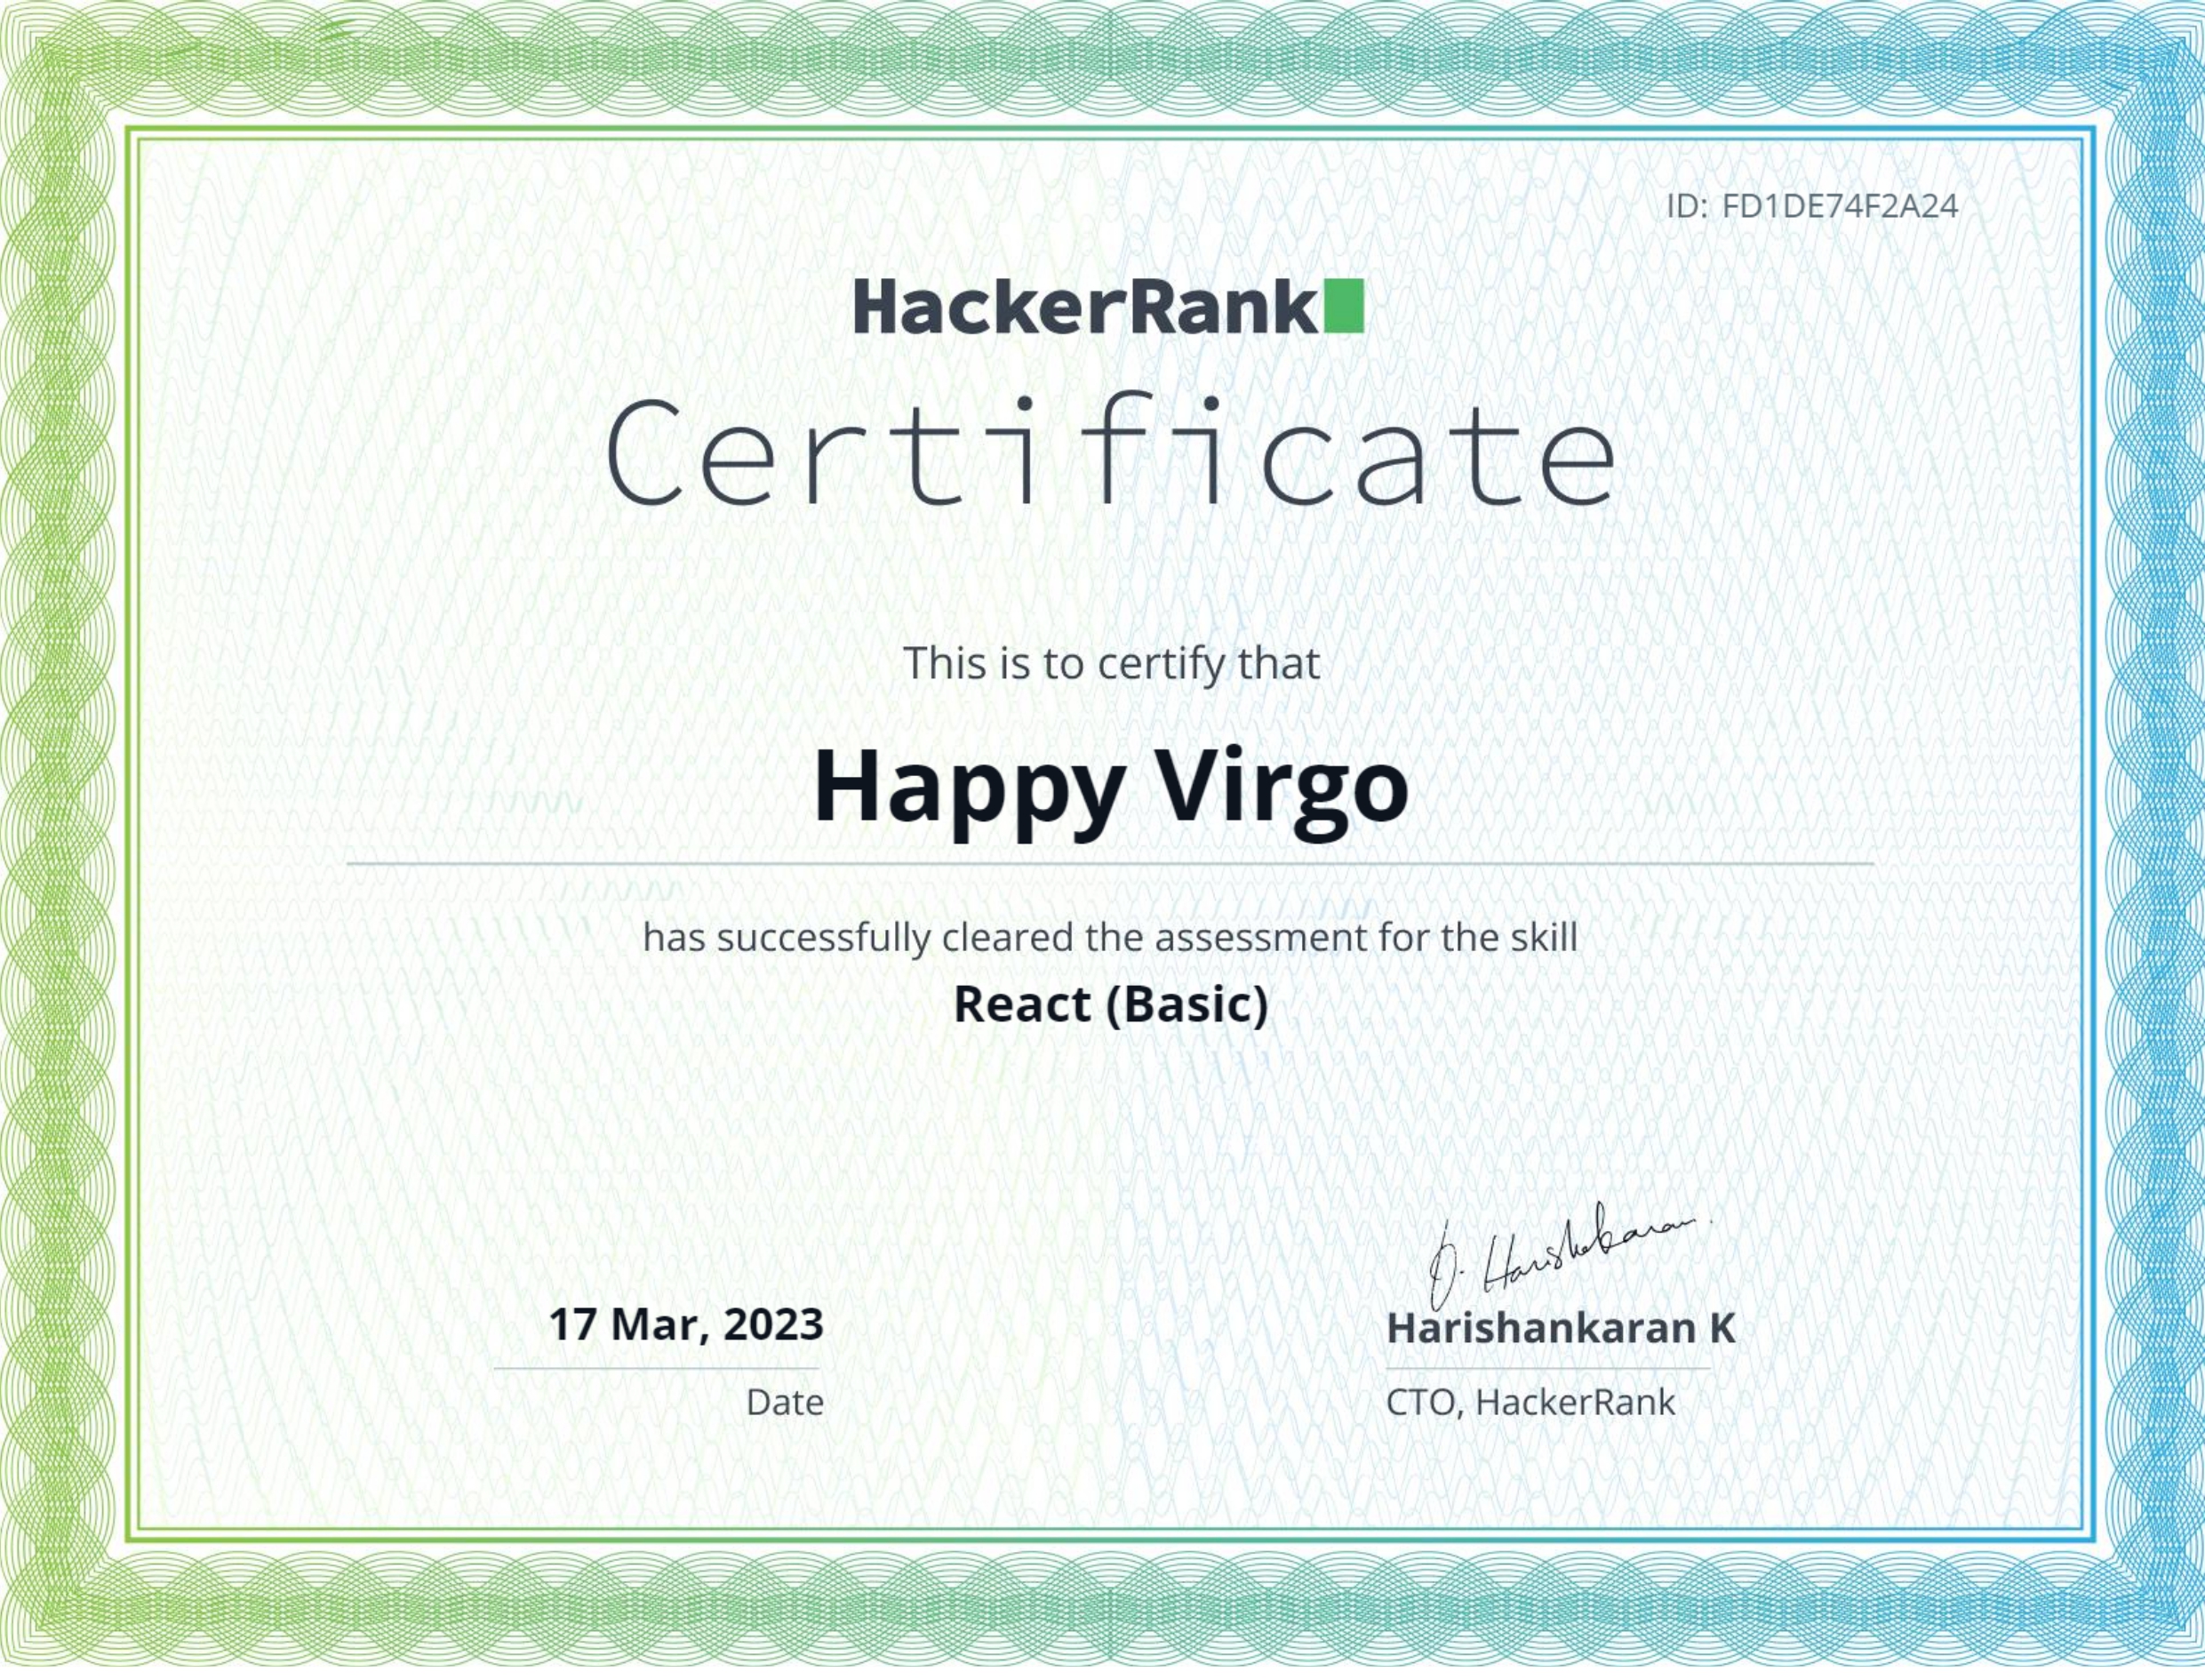 react_basic certificate.jpg